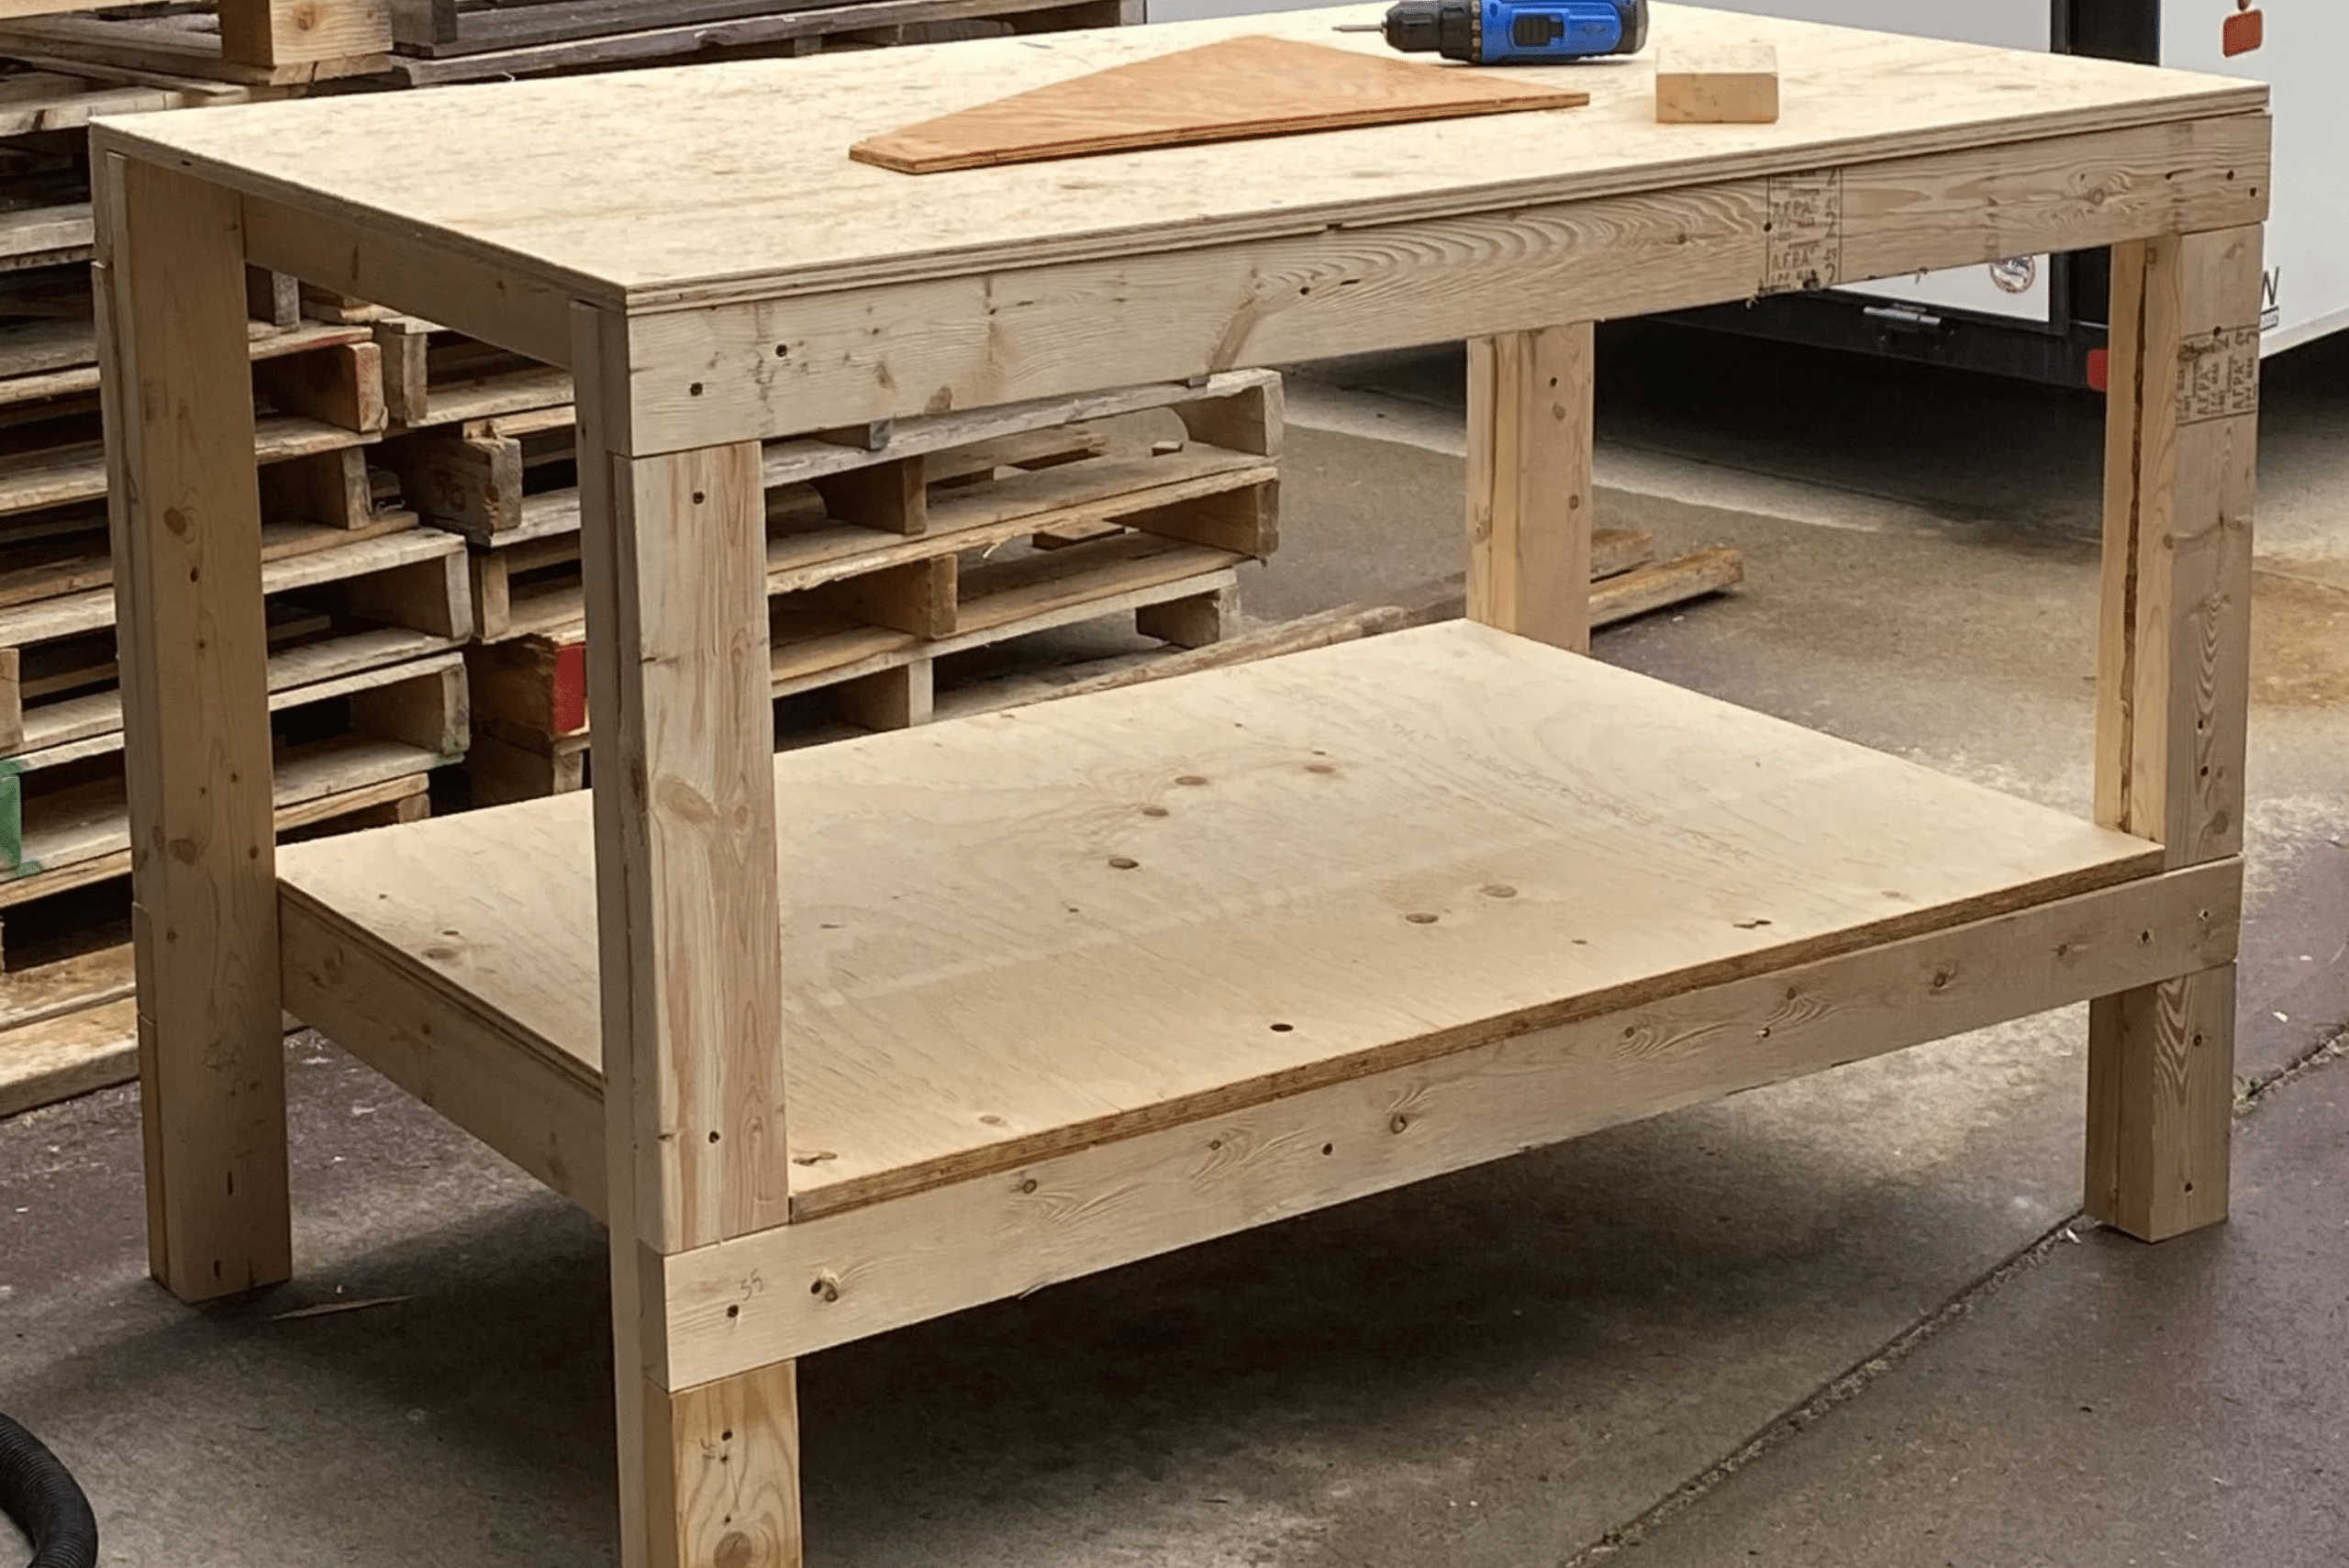 A wooden DIY workbench in a garage workshop.